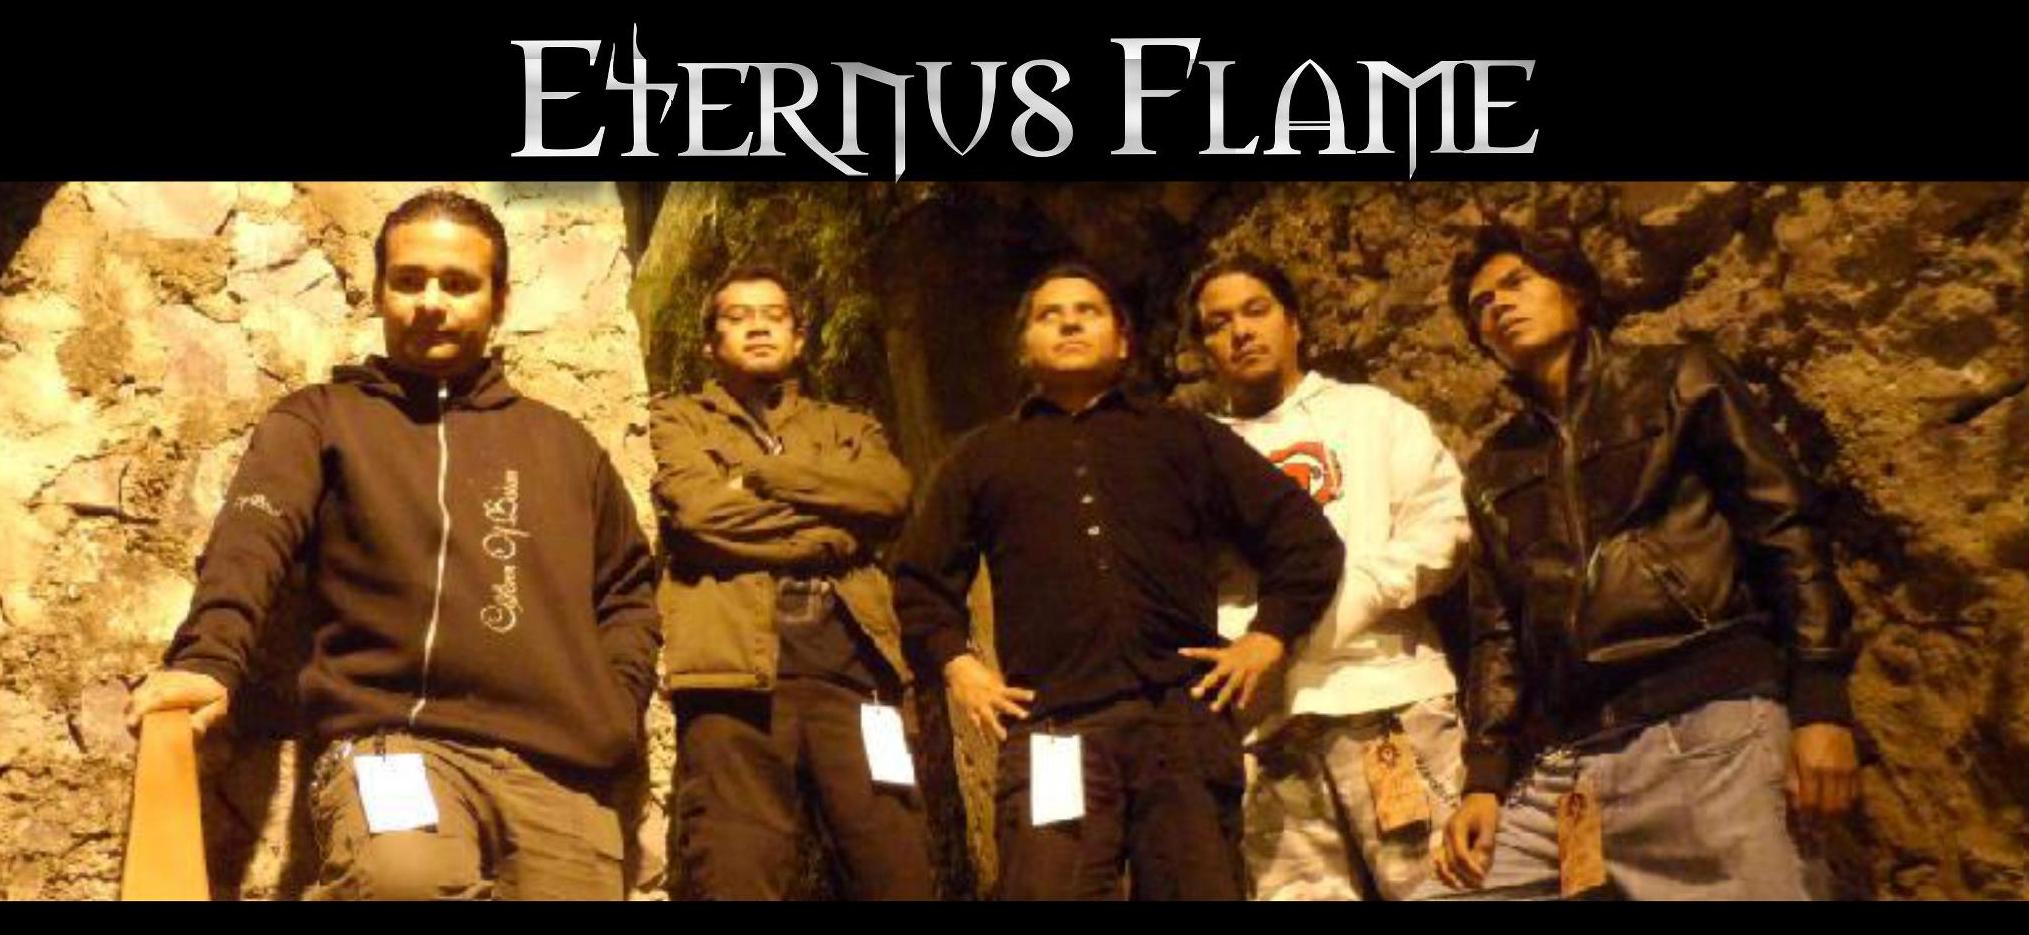 ETERNUS FLAME picture